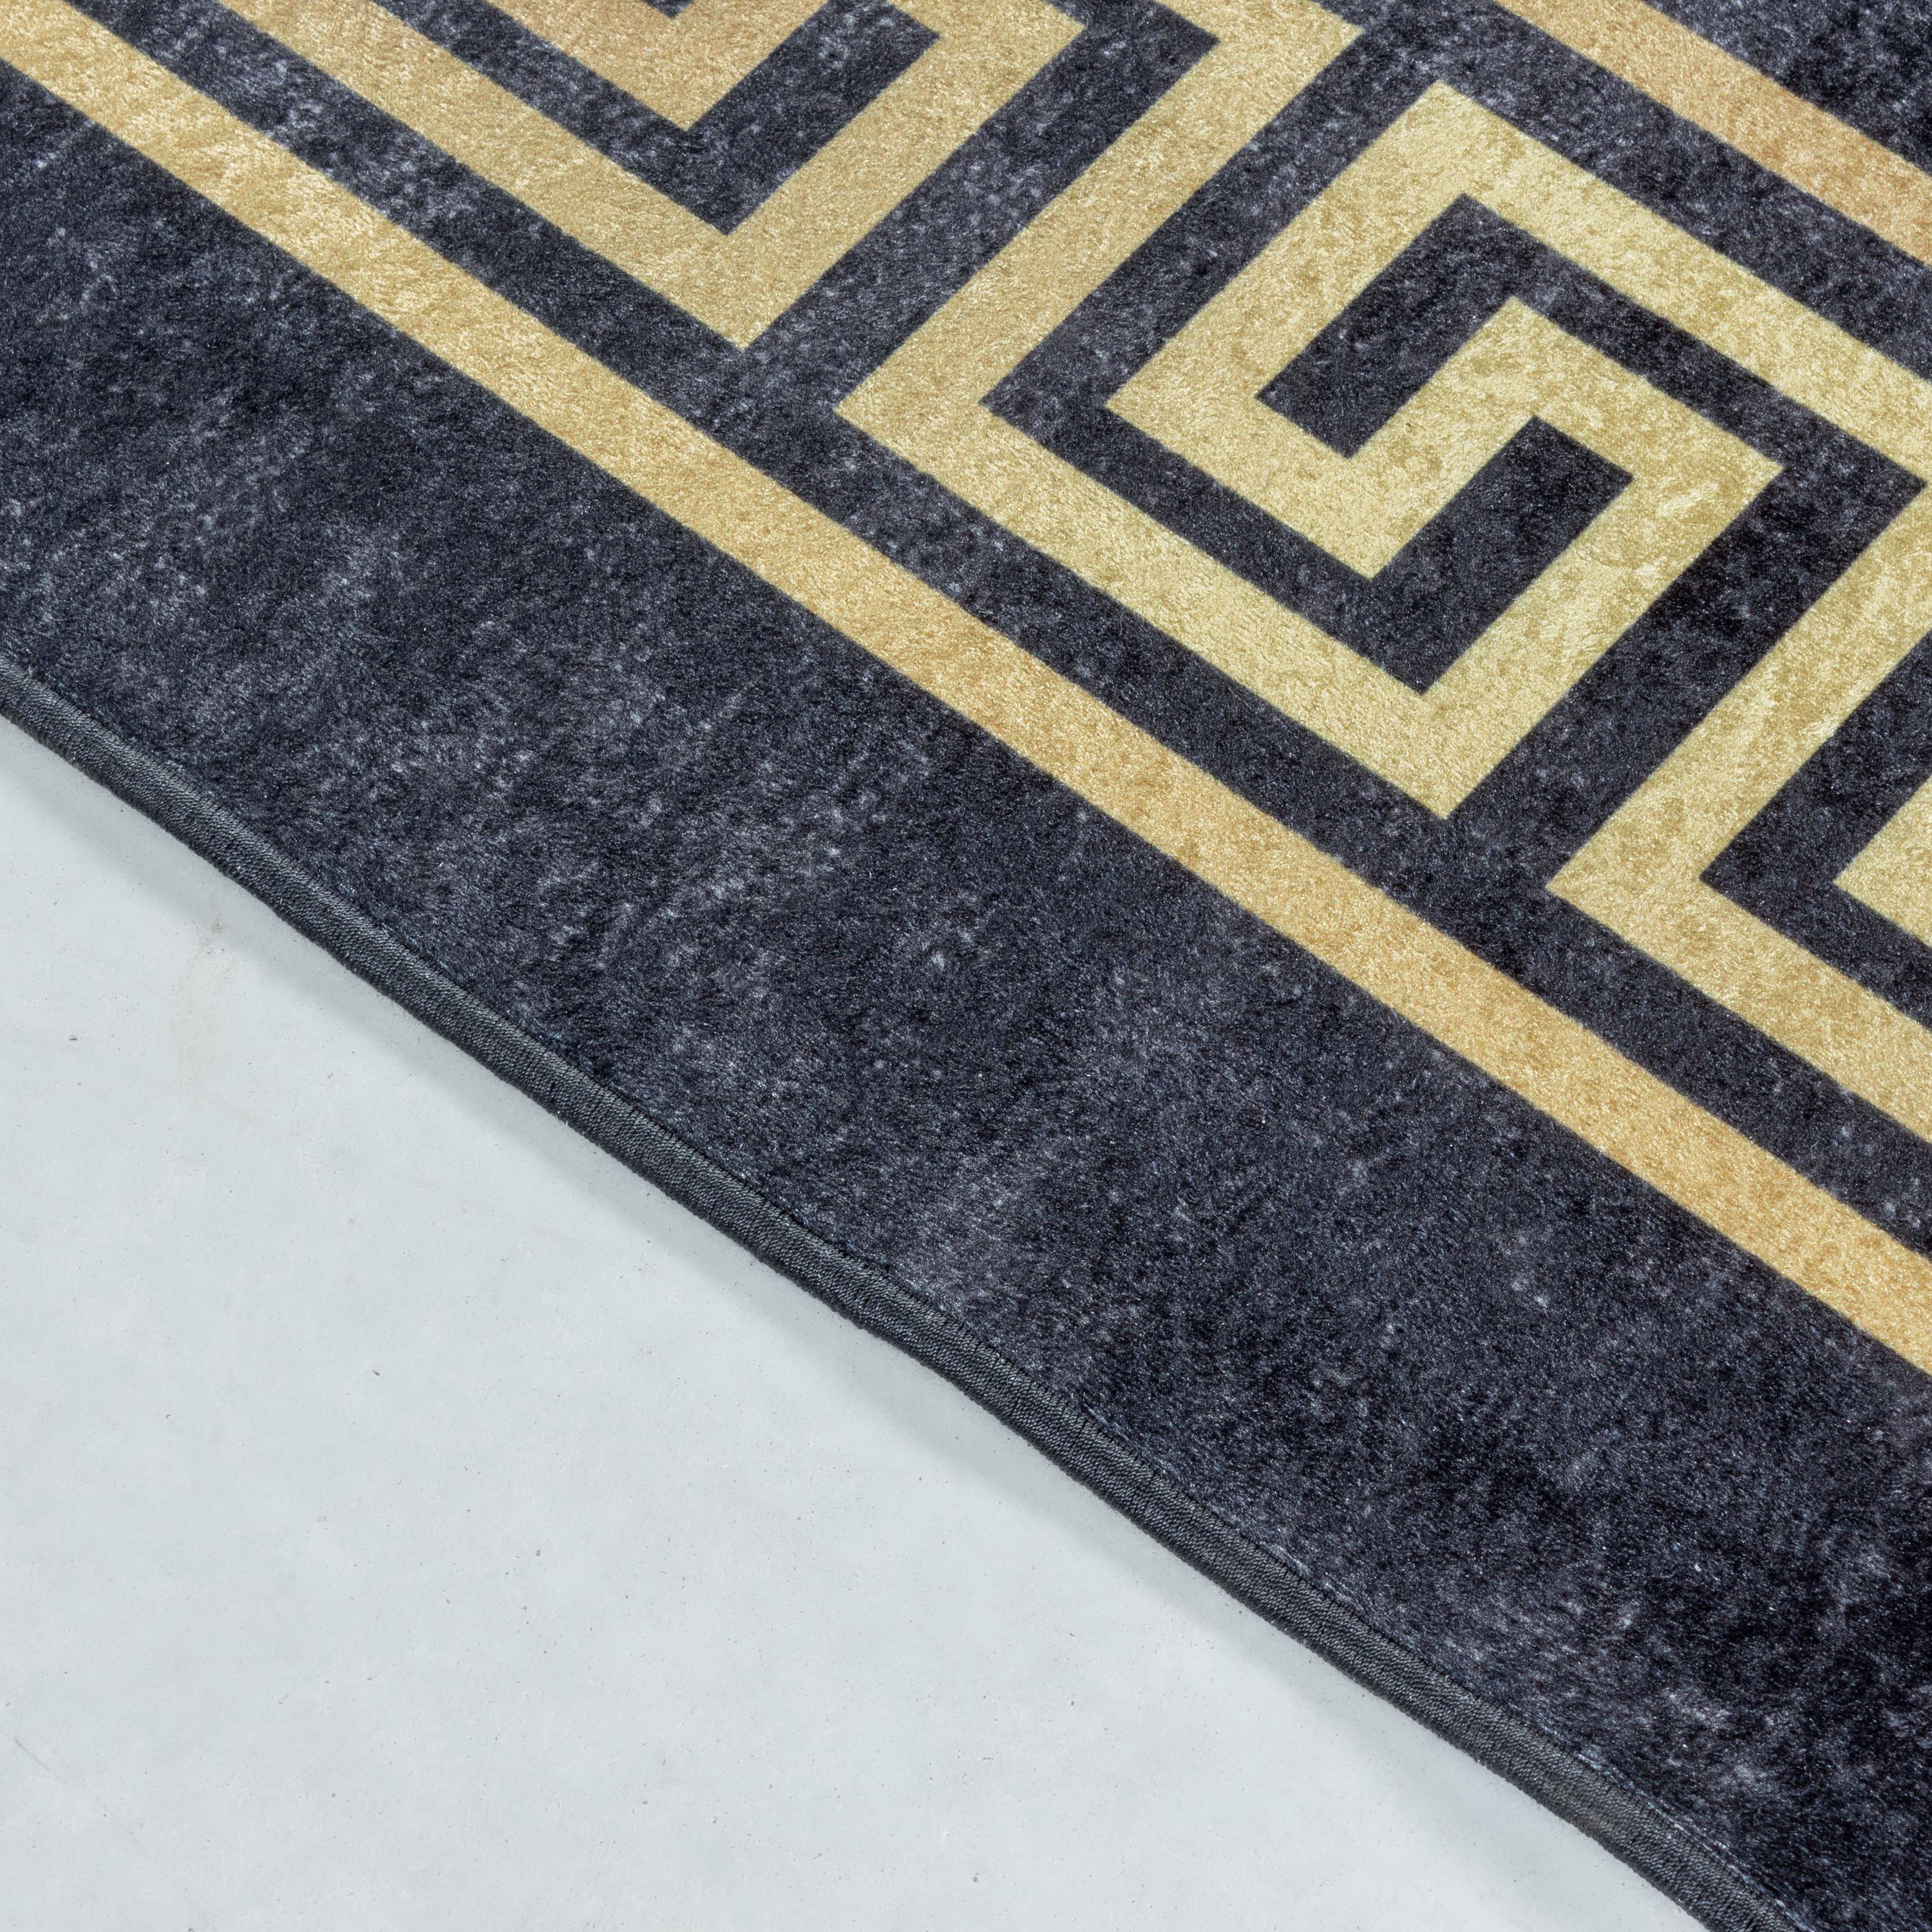 Teppich Waschbar Antirutsch Wohnzimmerteppich Antikes Muster Bordüre Schwarz